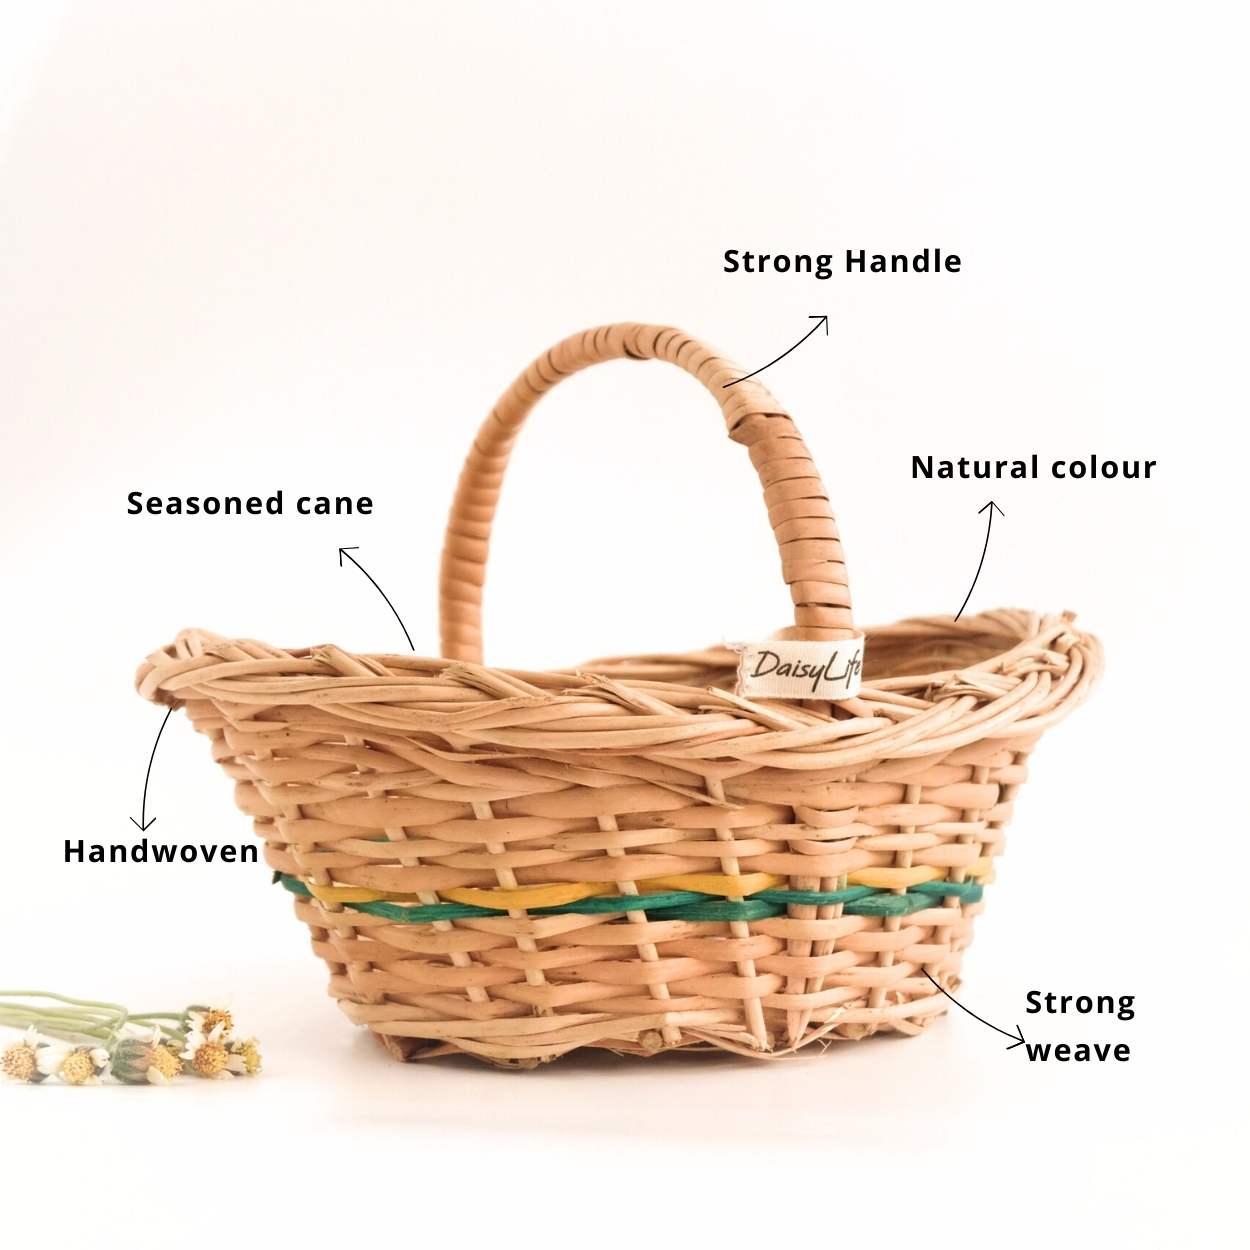 Flower Girl Wicker Basket features